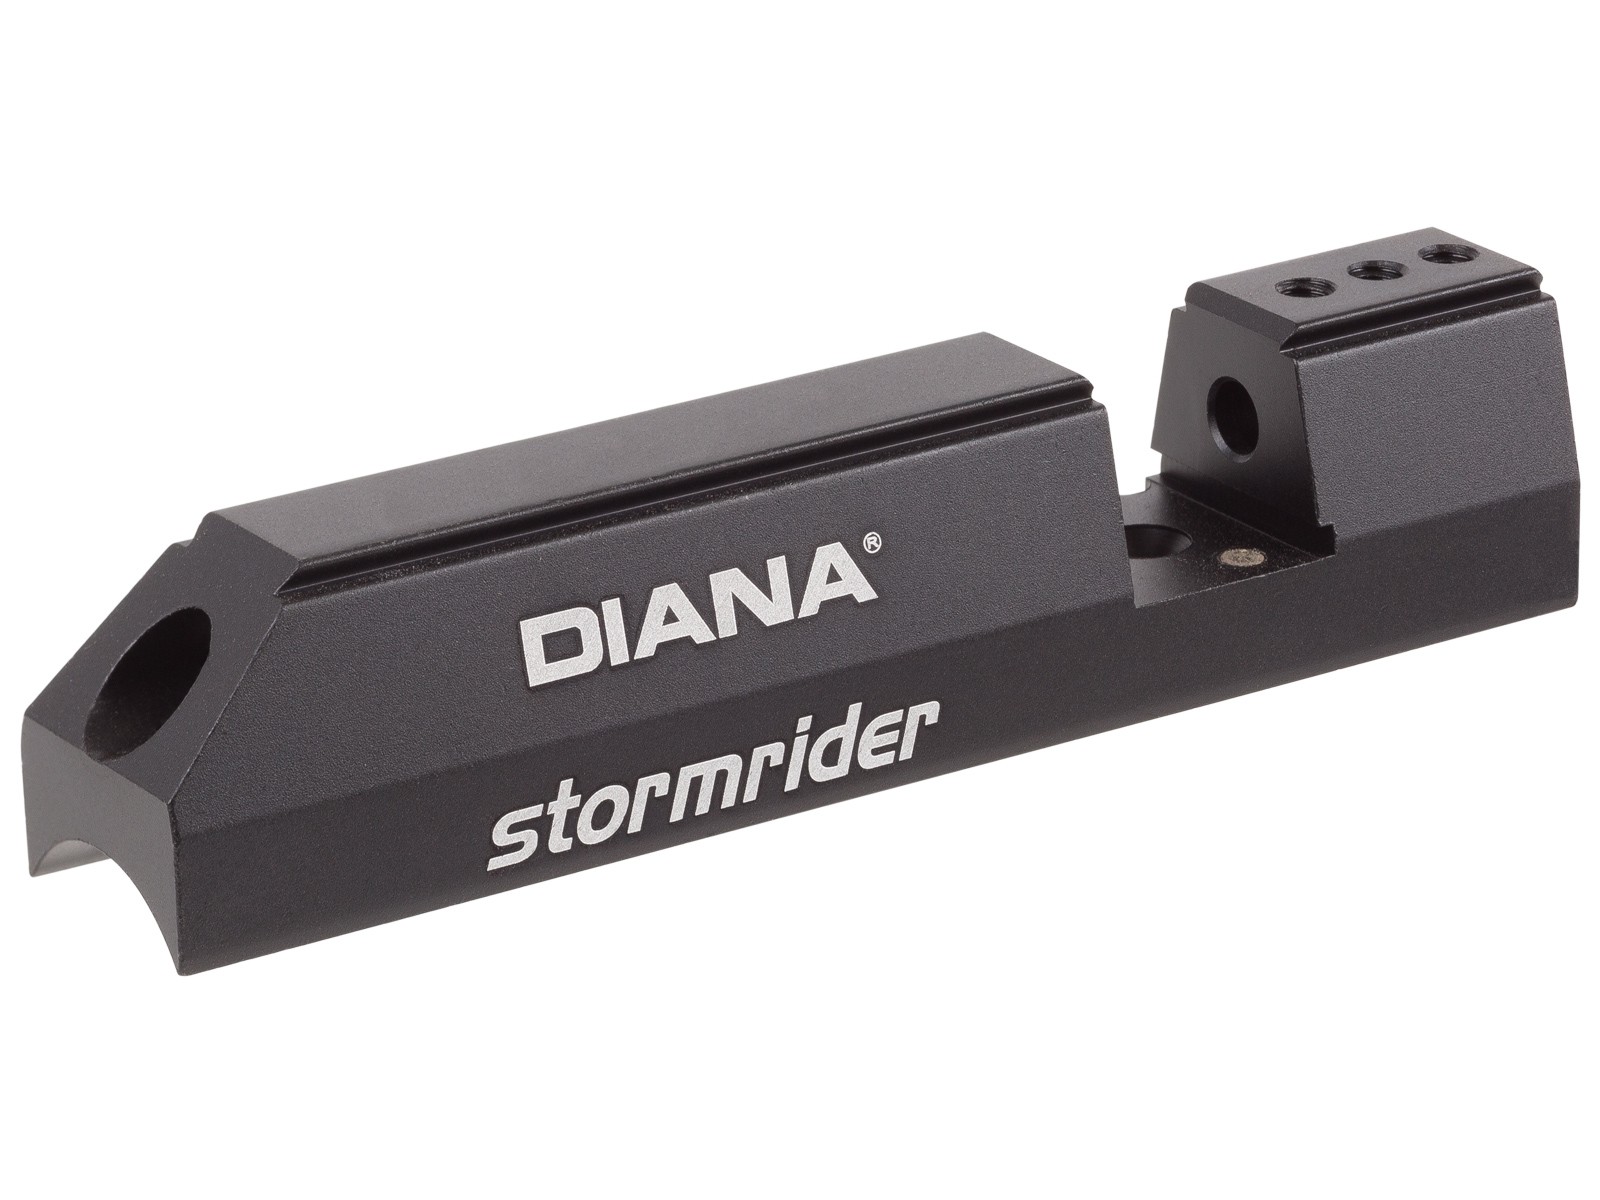 8749 Diana Stormrider Breech Block .177, Left-Handed-img-0